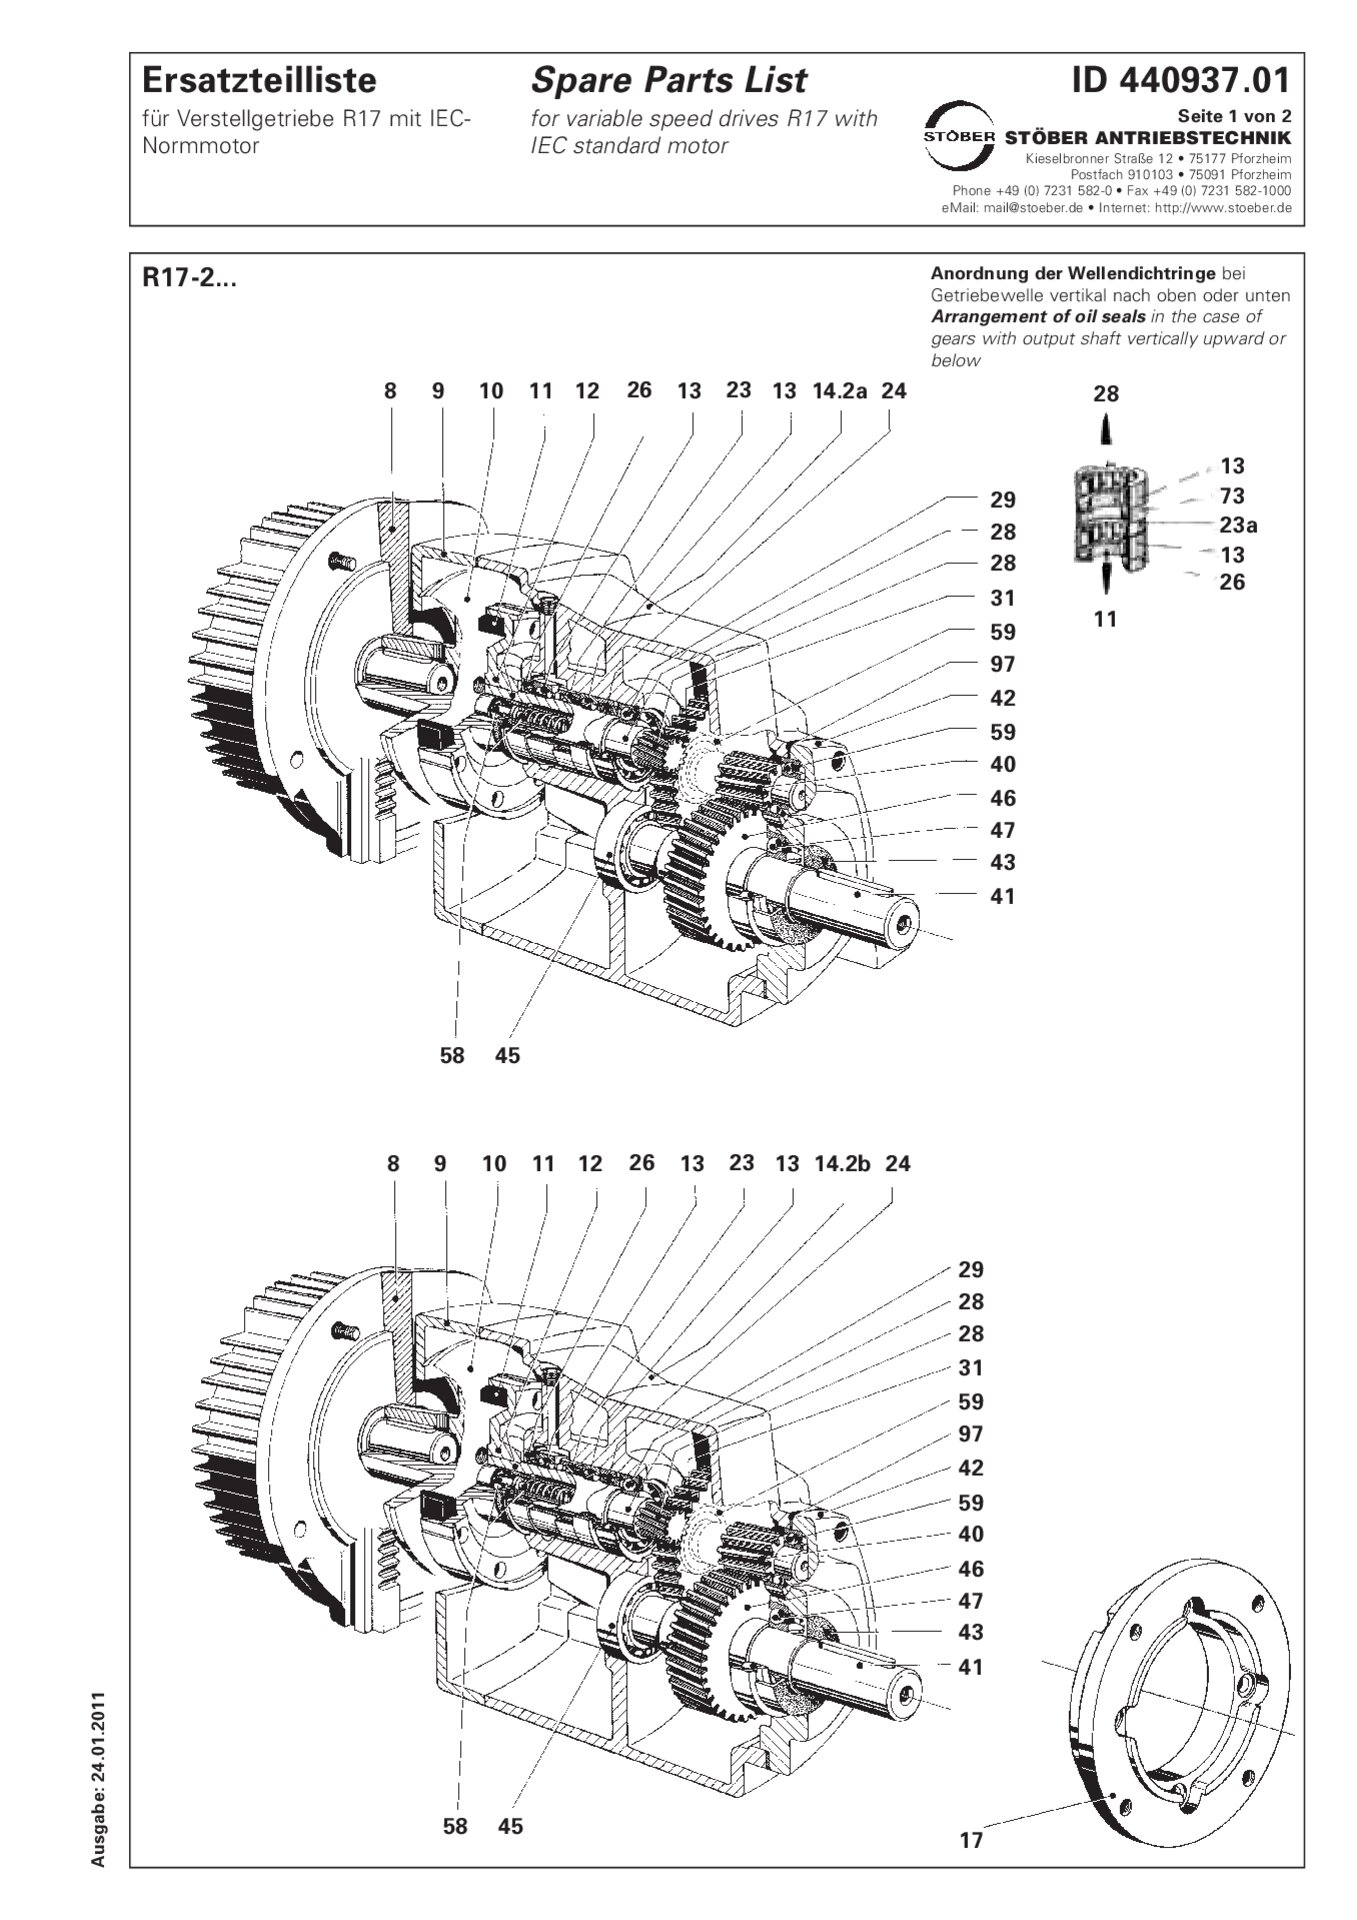 Ersatzteilliste R17-2... mit IEC-NormmotorSpare parts list R17-2 with IEC standard motor